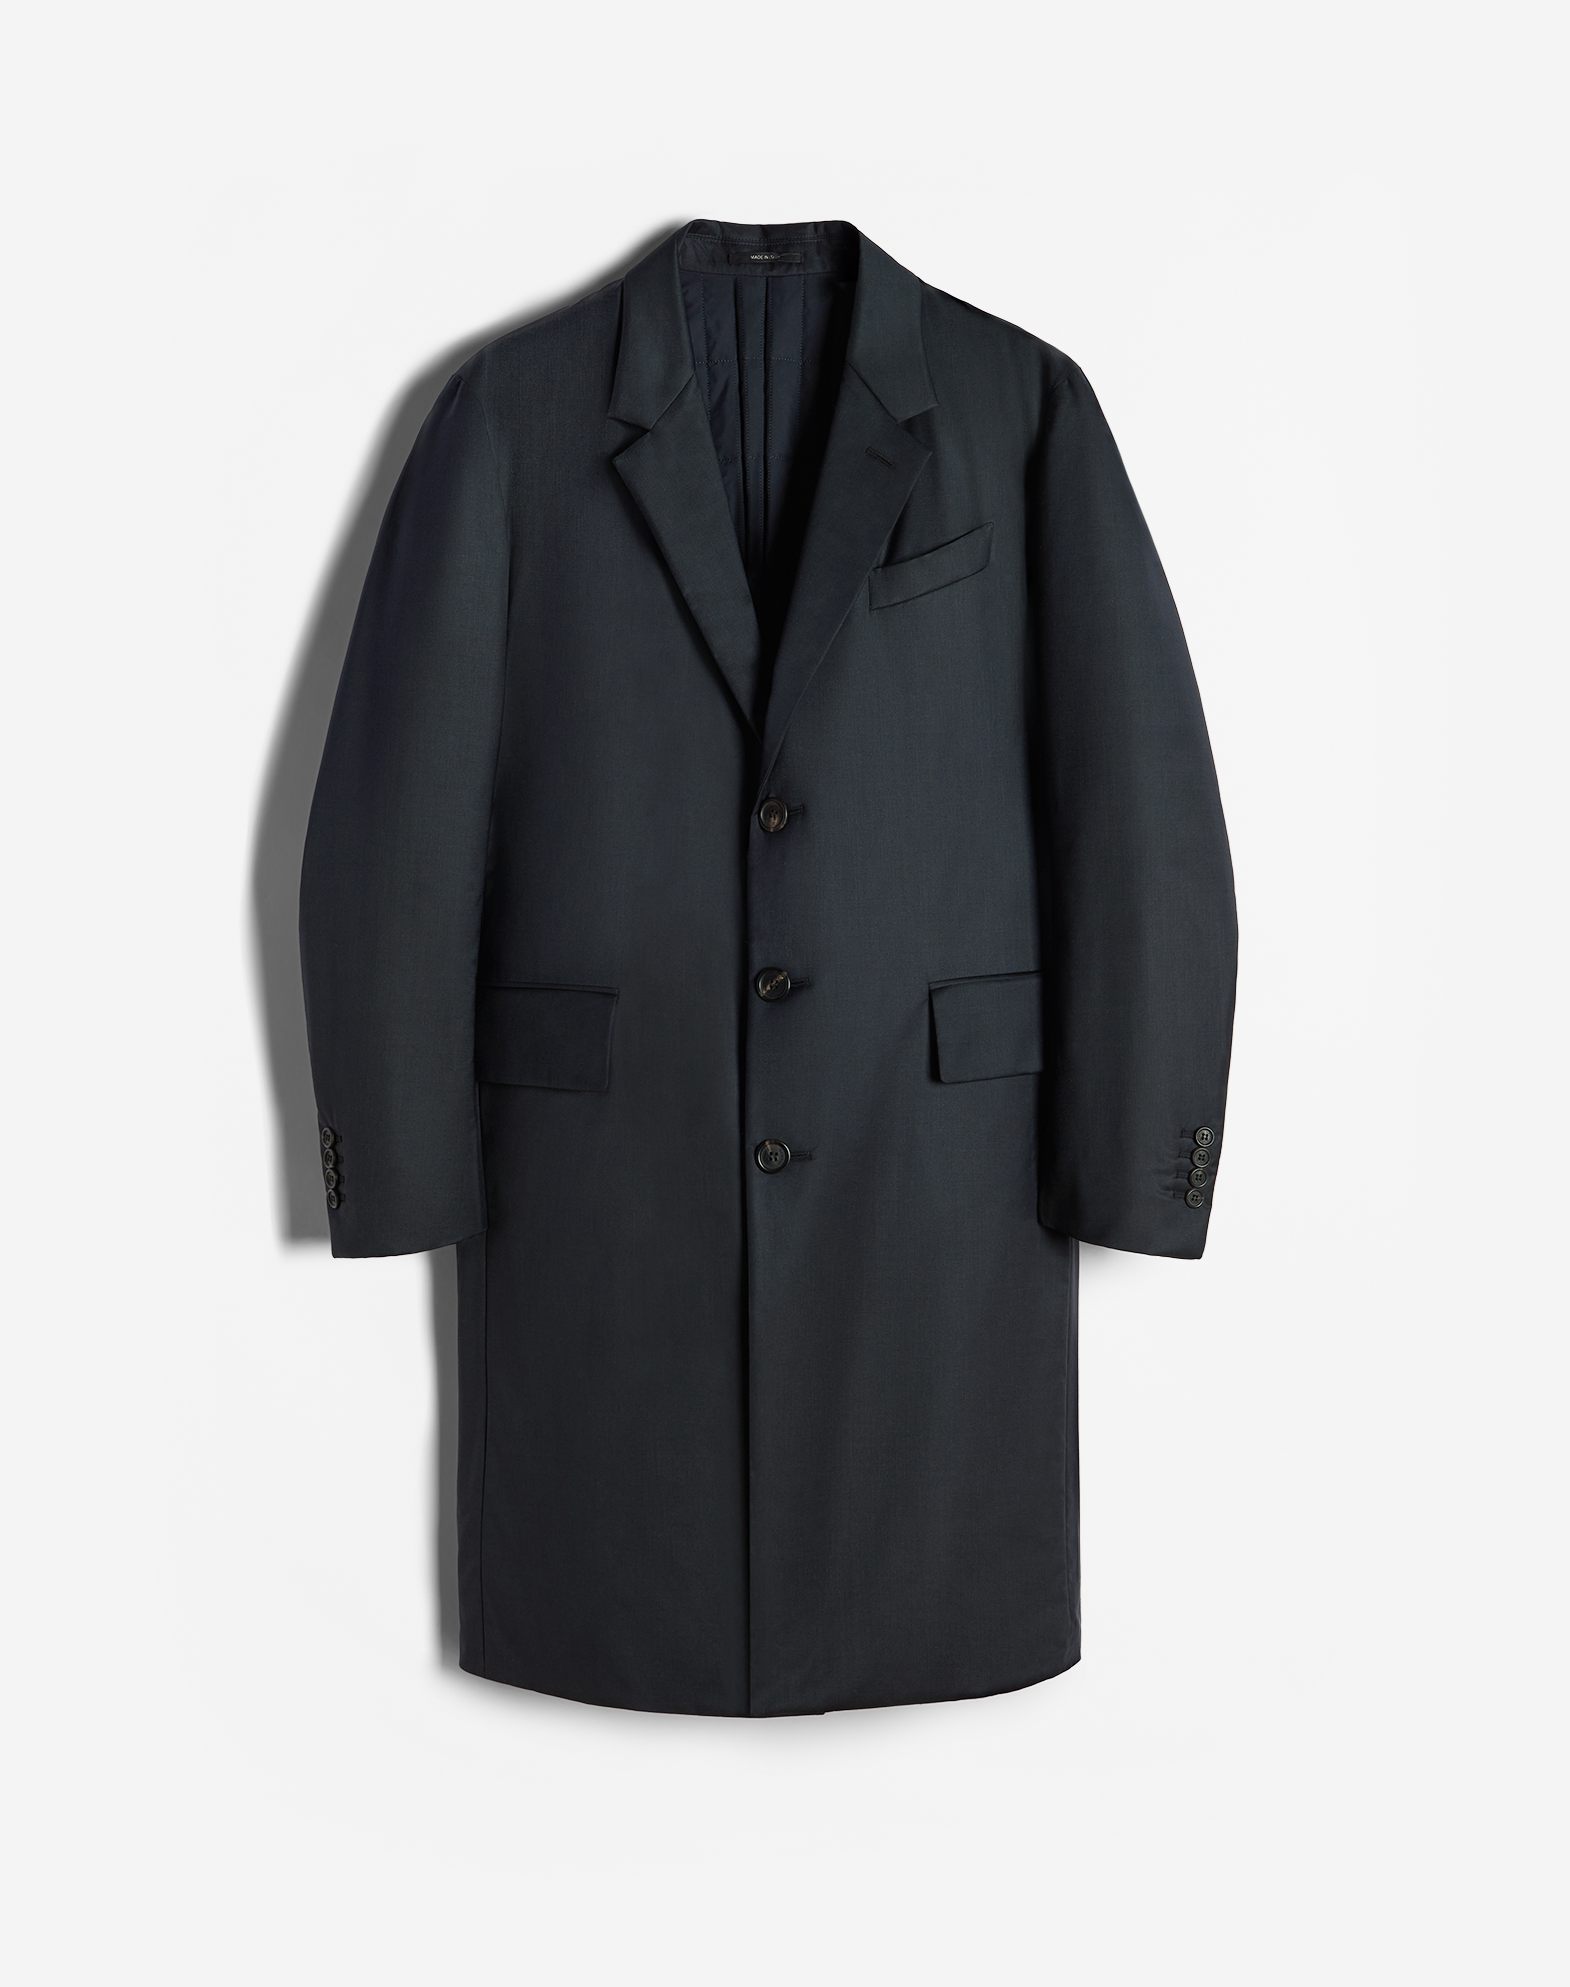 Dunhill Luxury Men's Top Coats